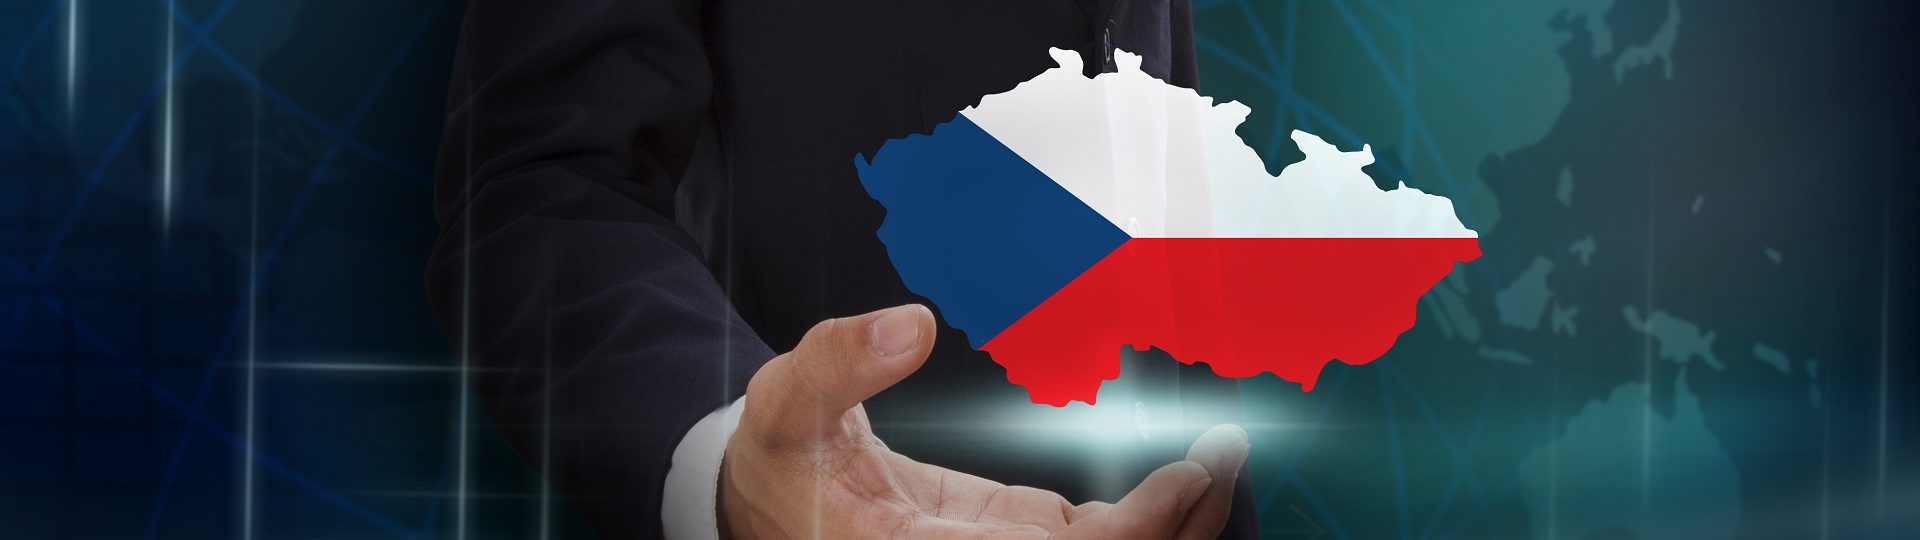 Česká ekonomika v roce 2018 vzrostla o 3 procenta